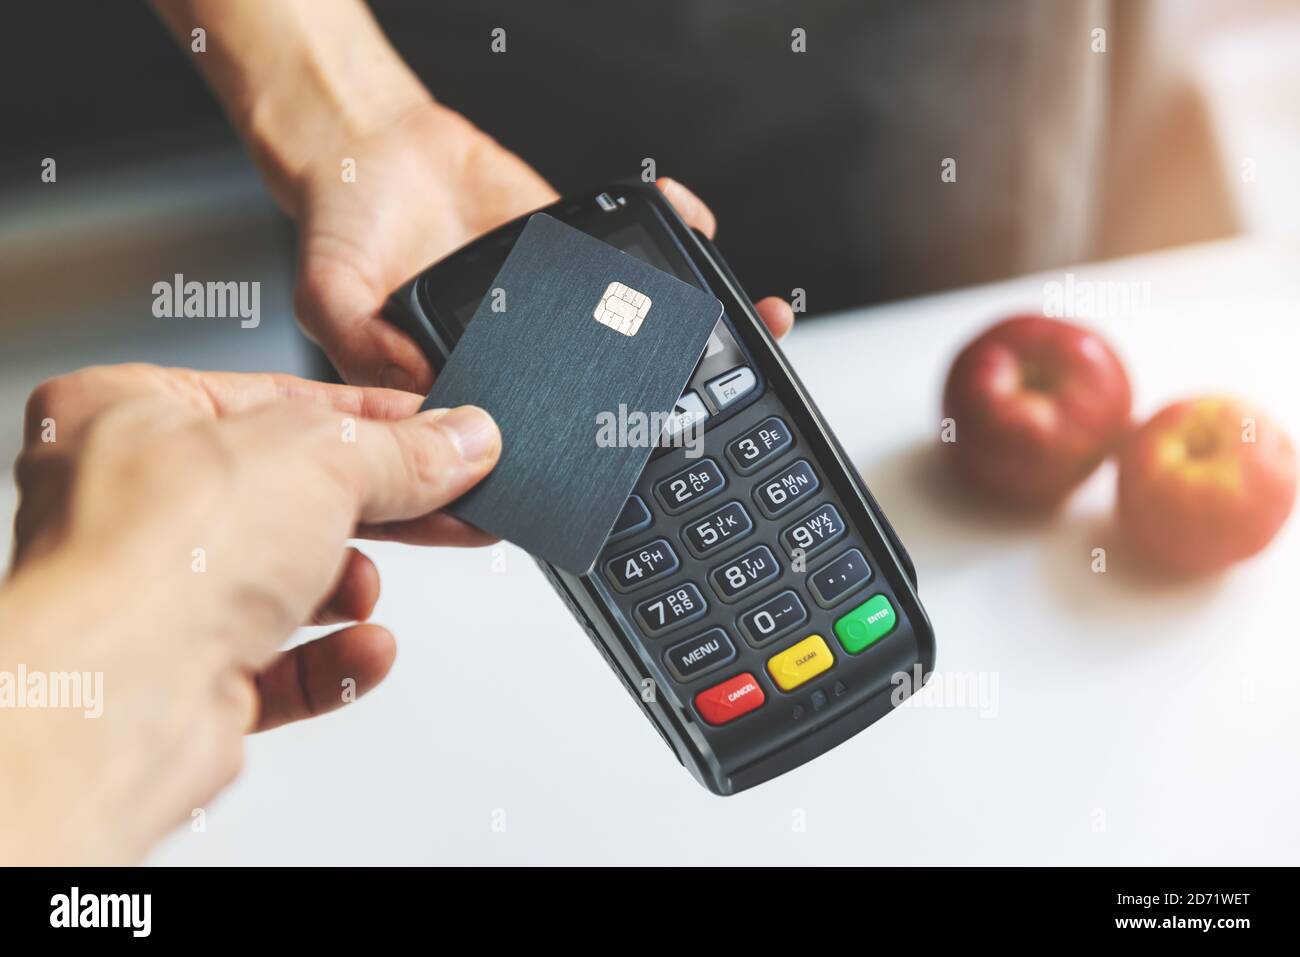 pagamento senza contatto nfc tramite carta di credito e terminale pos Foto Stock